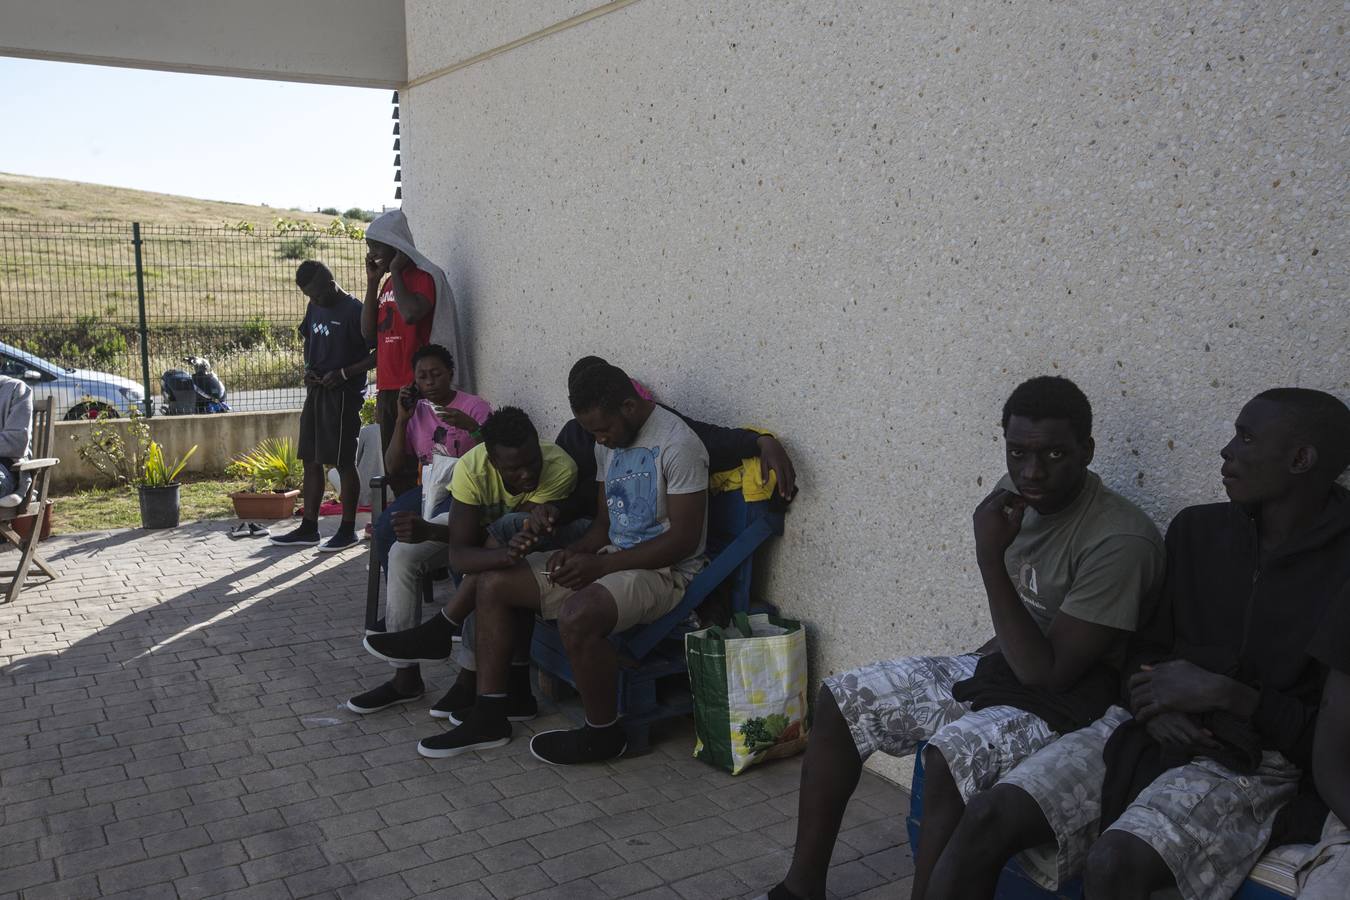 FOTOS: Inmigrantes, abandonados en El Puerto por la saturación de centros de acogida